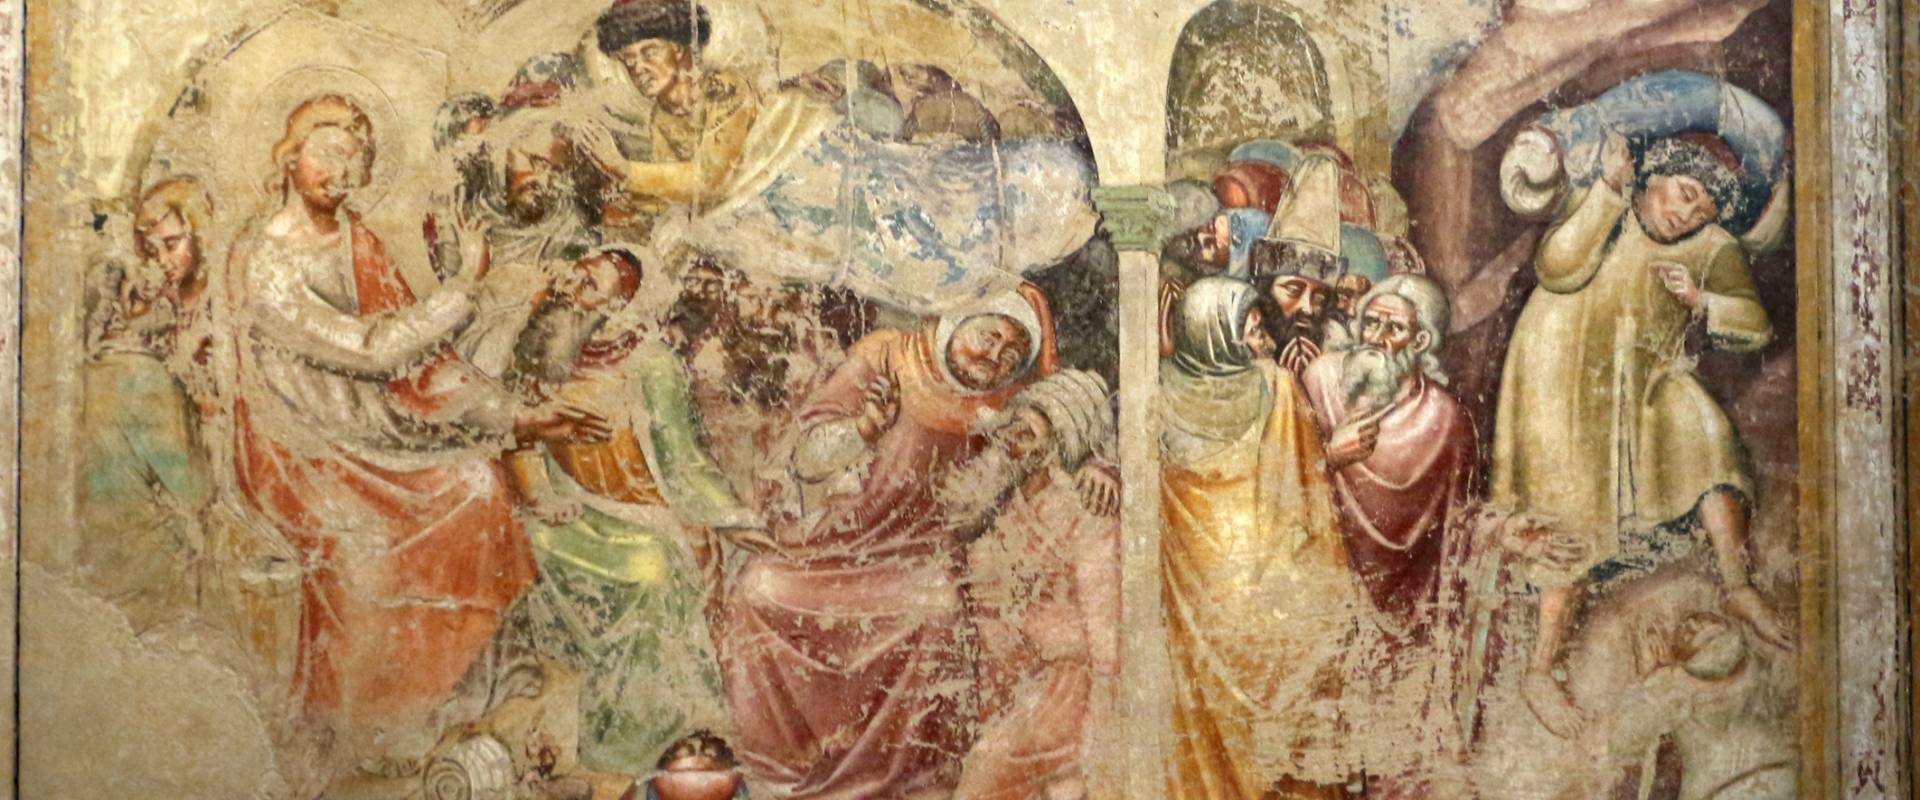 Pittori bolognesi, storie di gesù, 1330-75 ca., 02, da oratorio di mezzaratta photo by Sailko